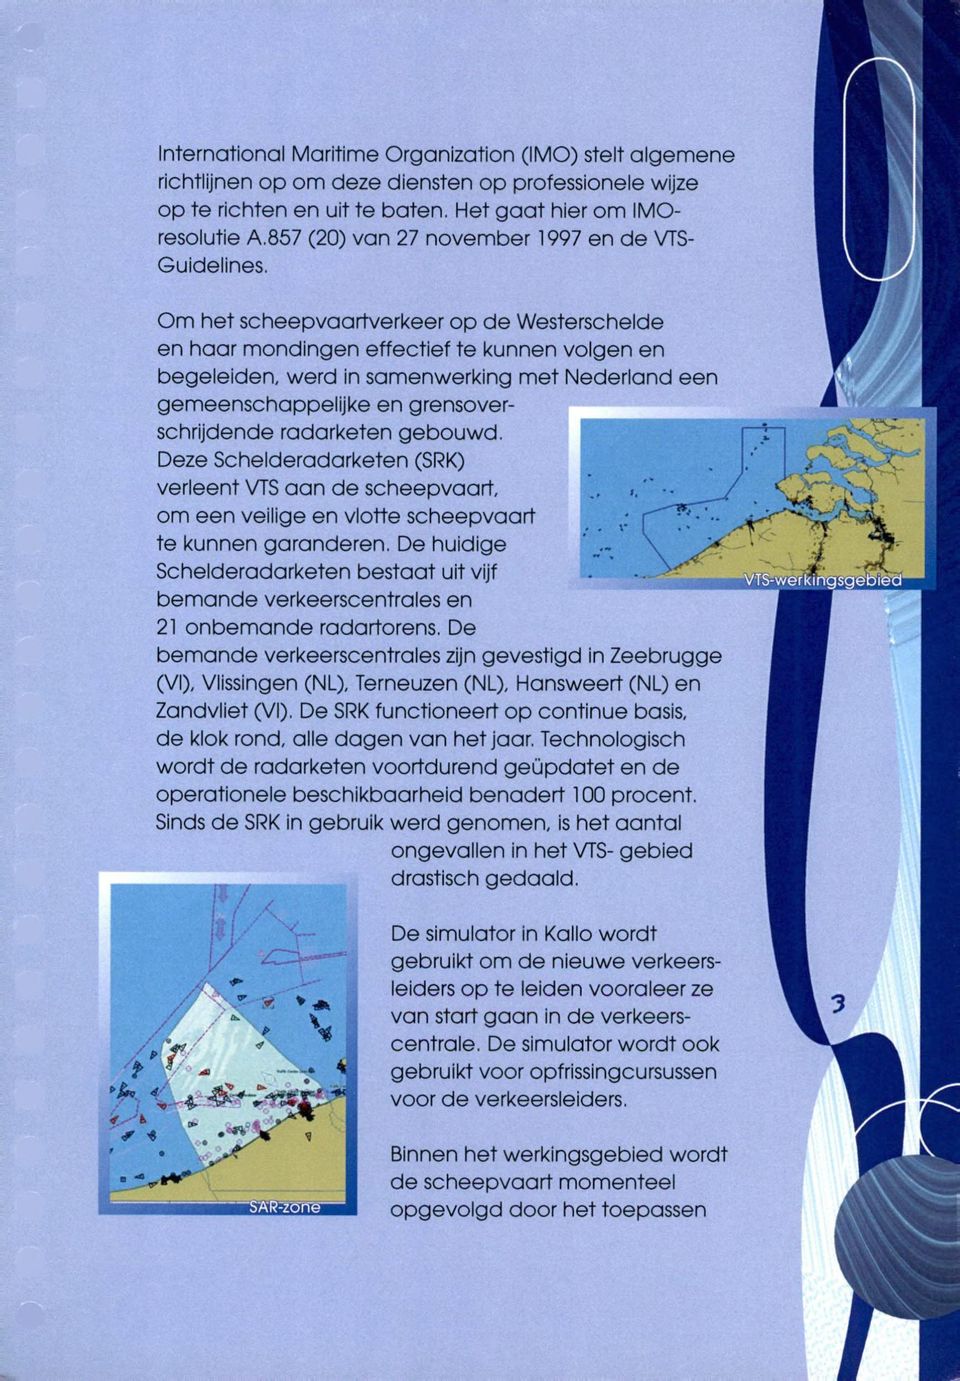 Om het scheepvaartverkeer op de Westerschelde en haar mondingen effectief te kunnen volgen en begeleiden, werd in samenwerking met Nederland een gemeenschappelijke en grensoverschrijdende radarketen